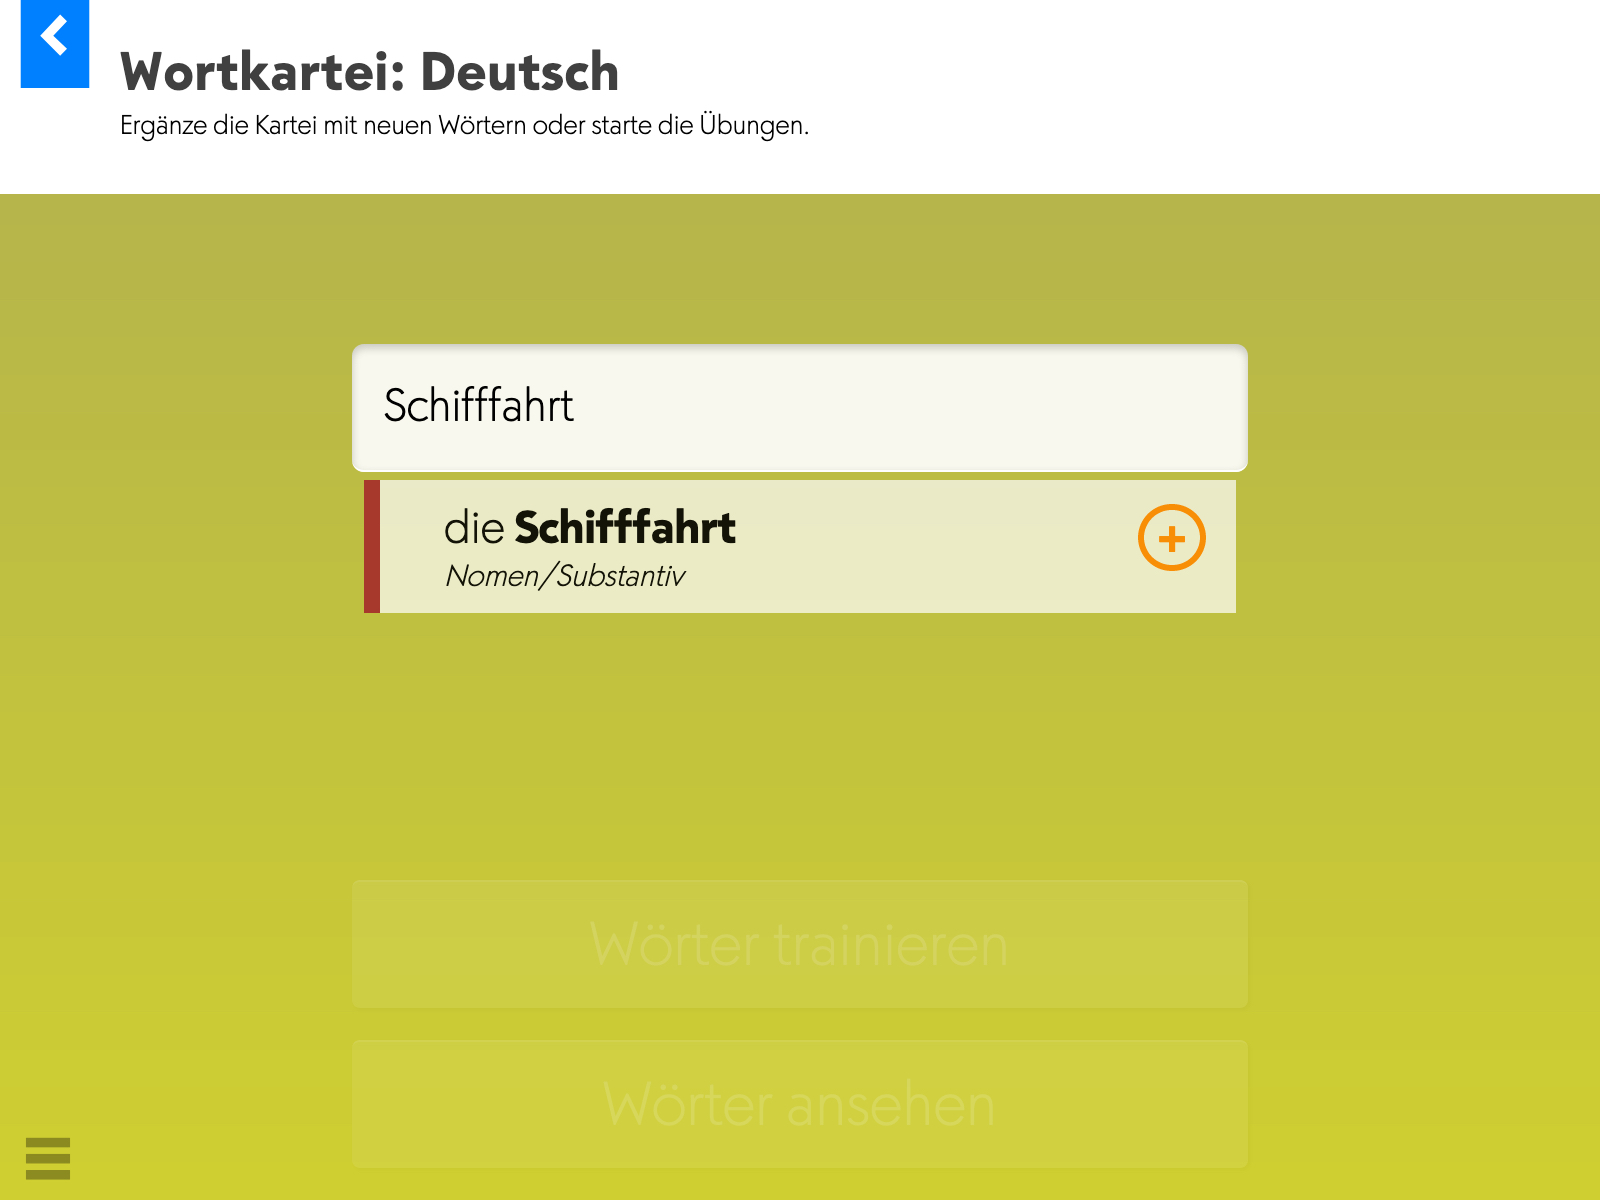 Wortkartei: Deutsch – Startseite